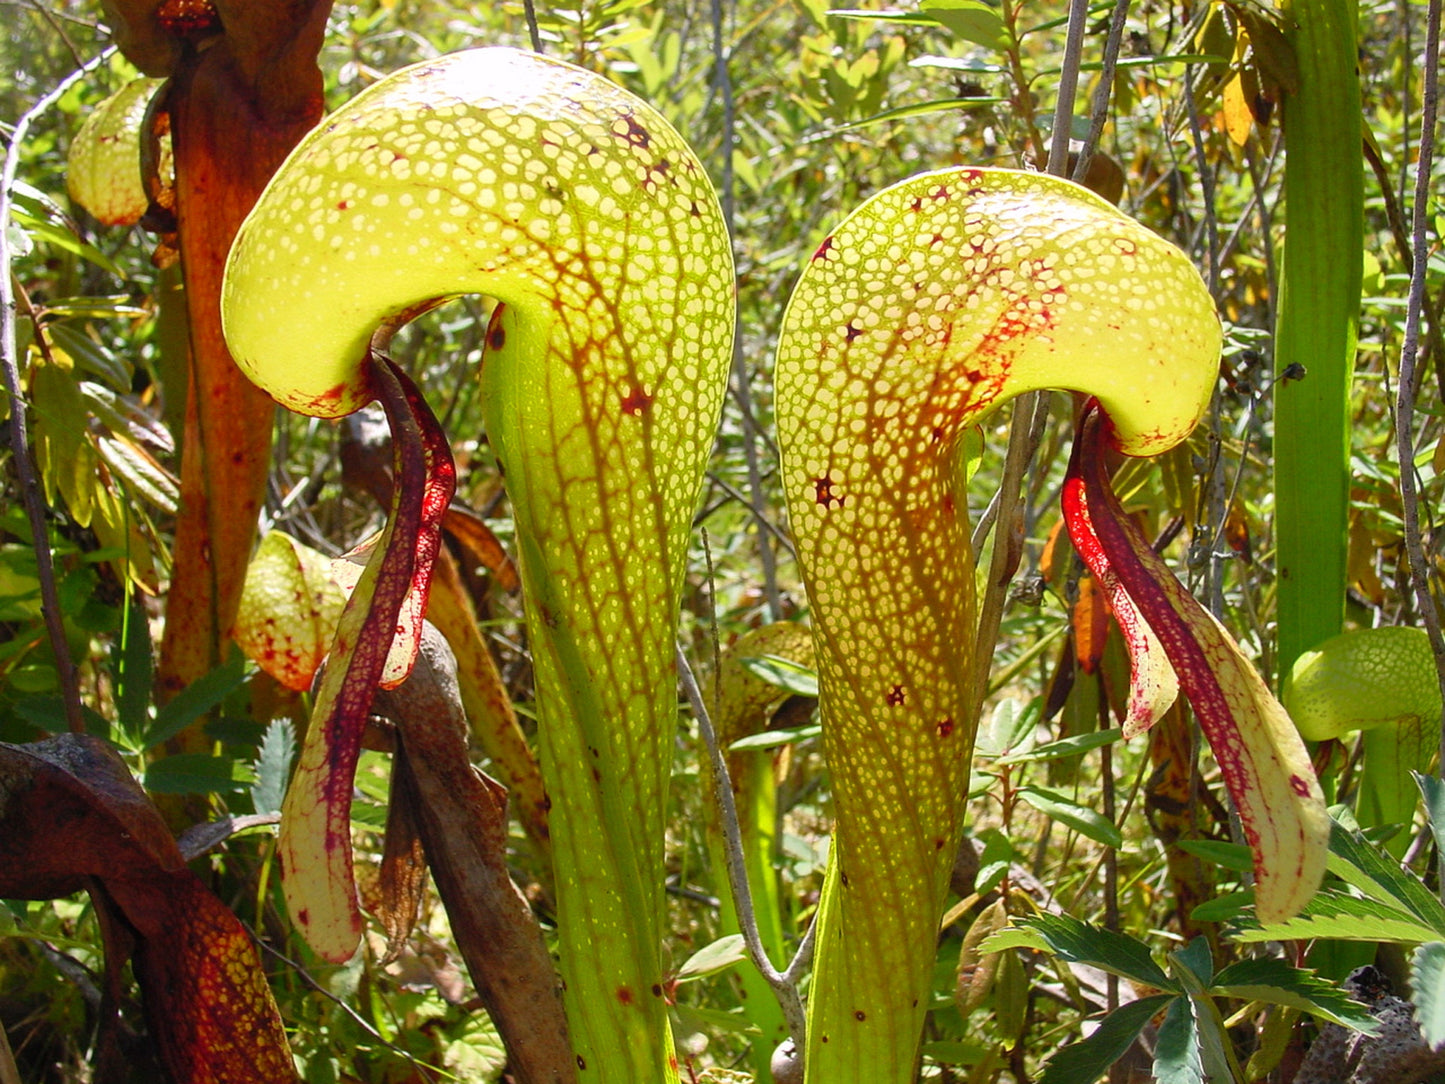 Darlingtonia Californica * Cobra Lily * Carnivorous California Pitcher Plant * Rare * 5 Seeds *